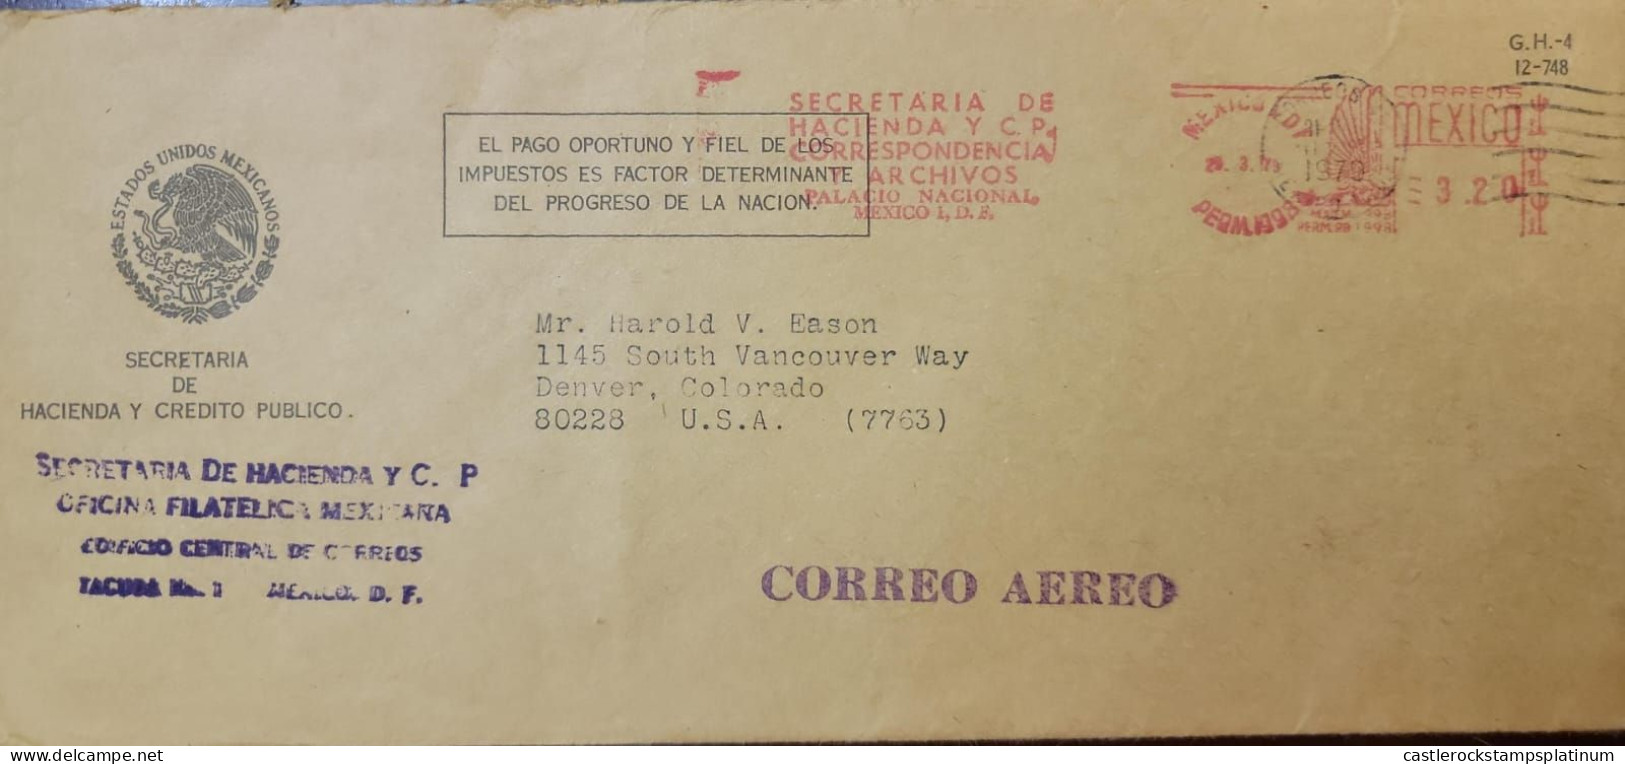 O) 1979 MEXICO, METERSTAMP, SECRETARIA DE HACIENDA Y C.P - ESTADOS UNIDOS MEXICANOS, CIRCULATED TO USA - México